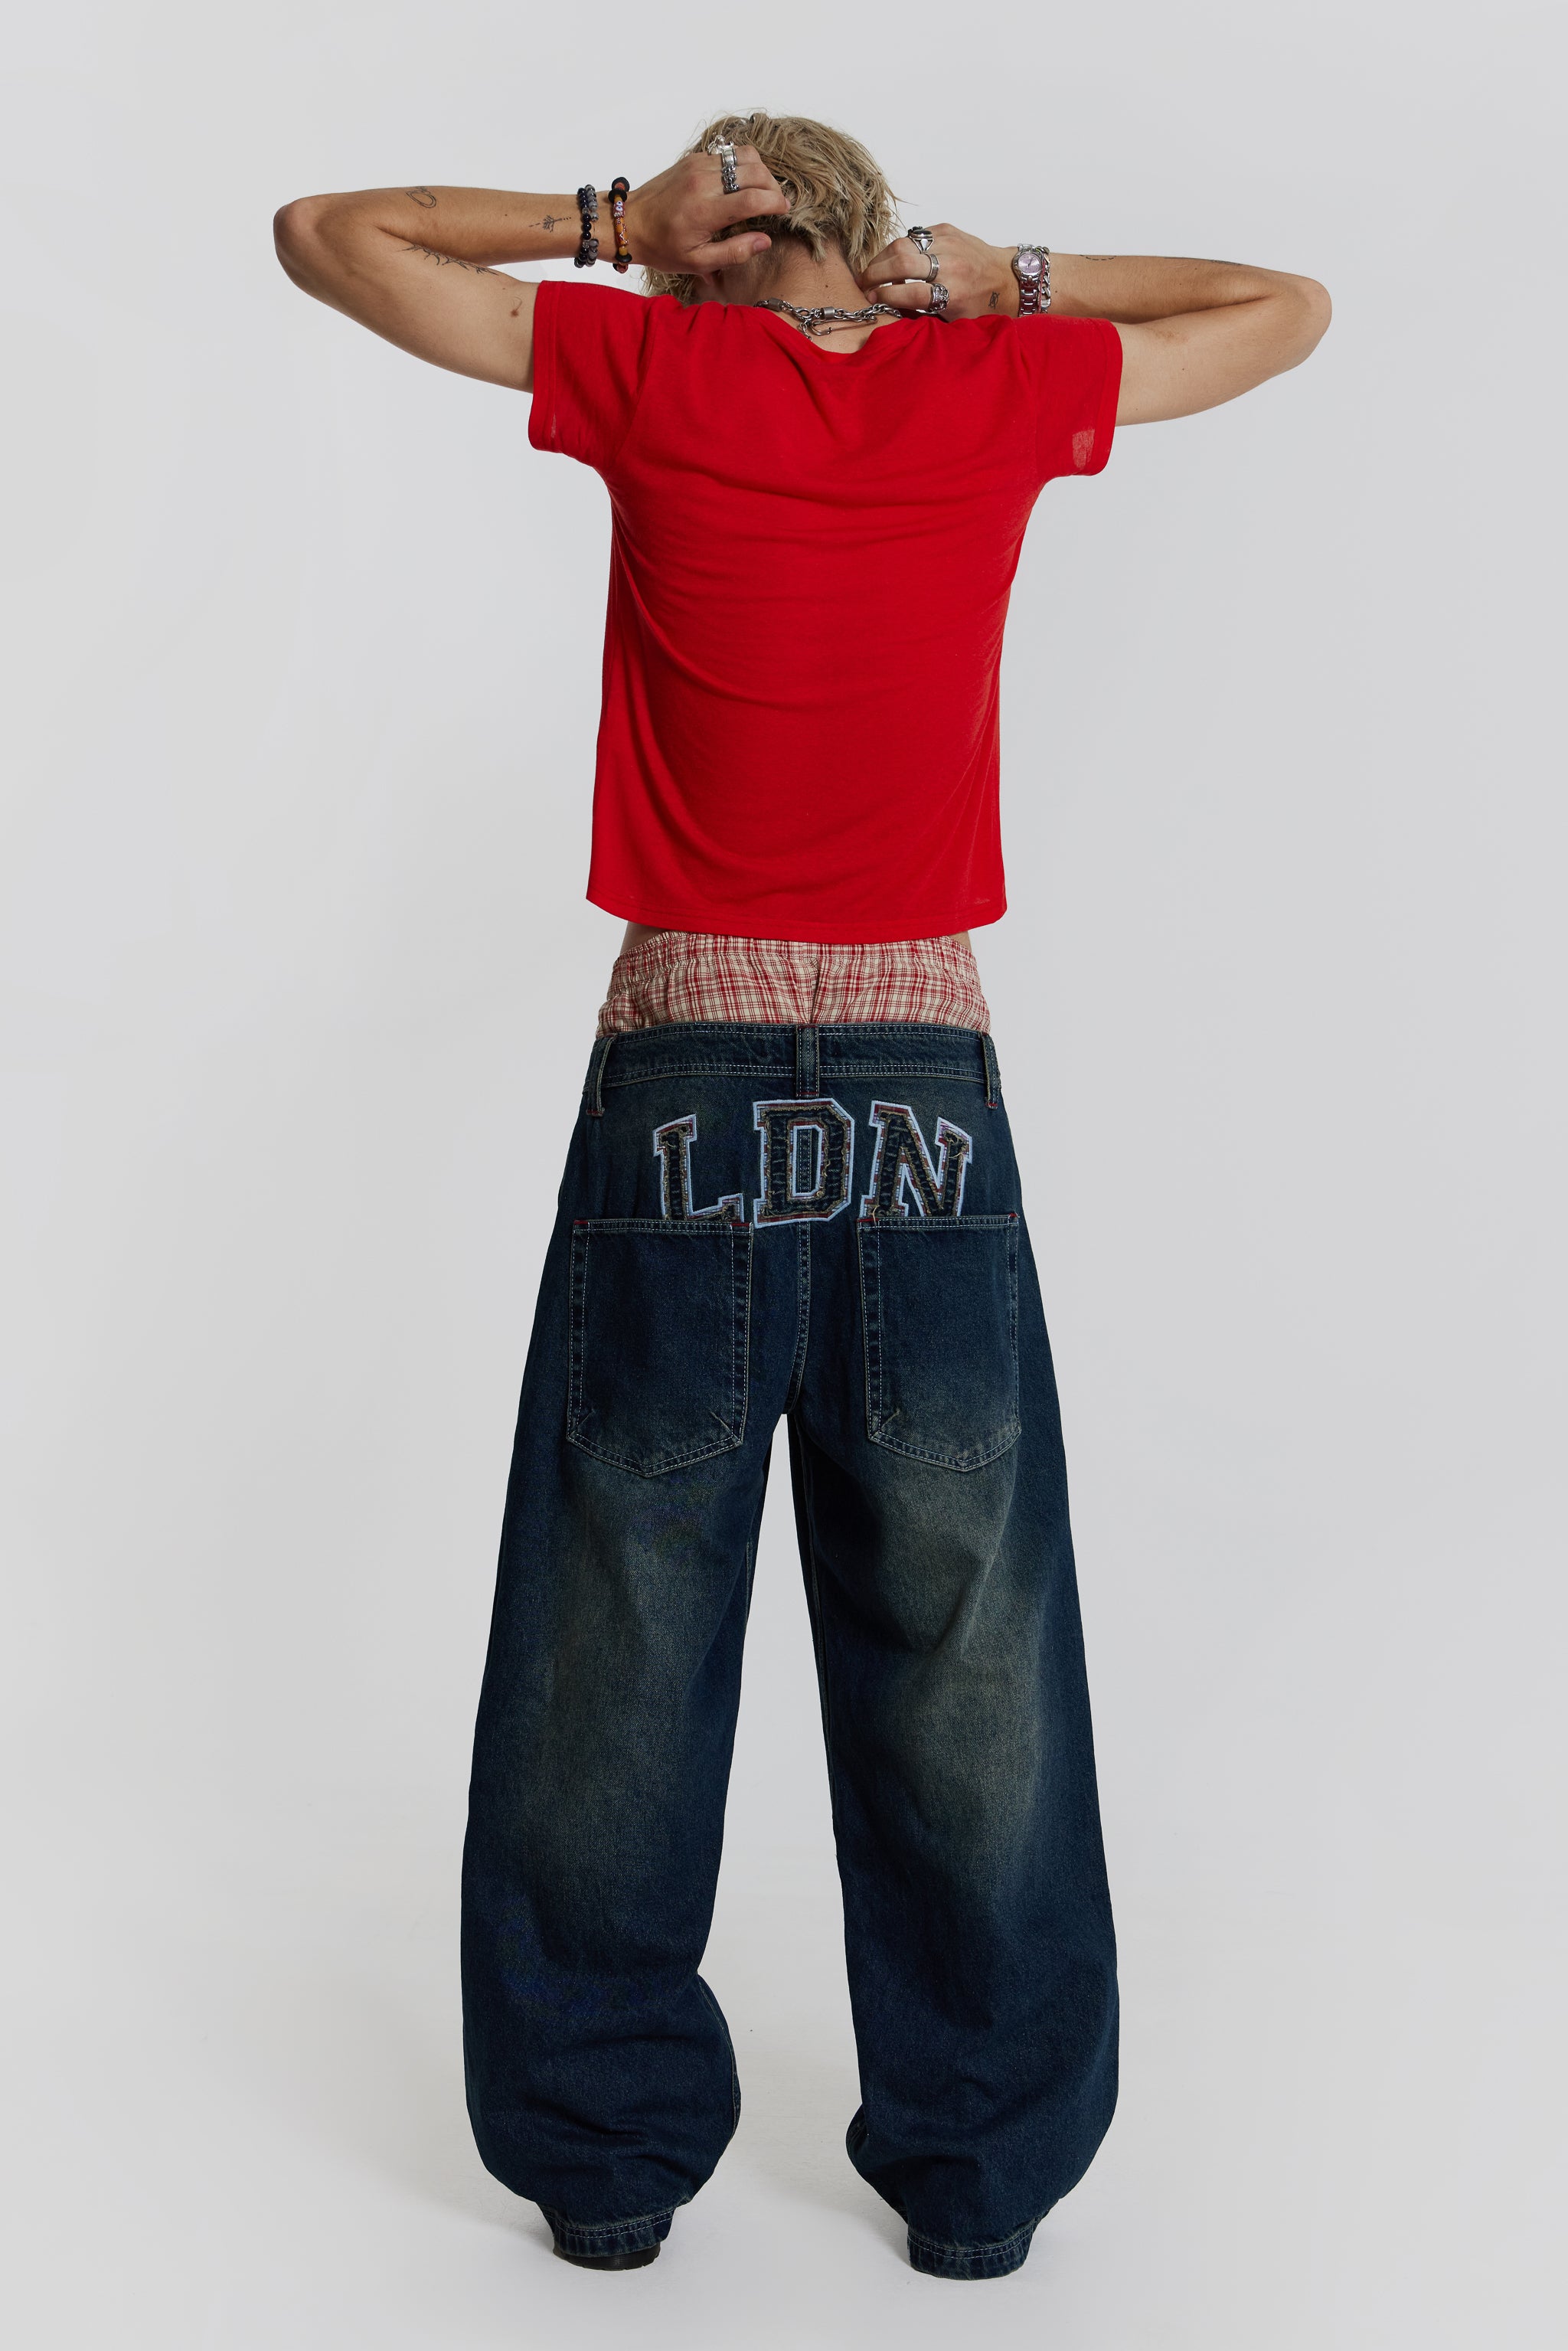 JADED LONDON LDN Colossus Jeans デニム W30パンツ - パンツ